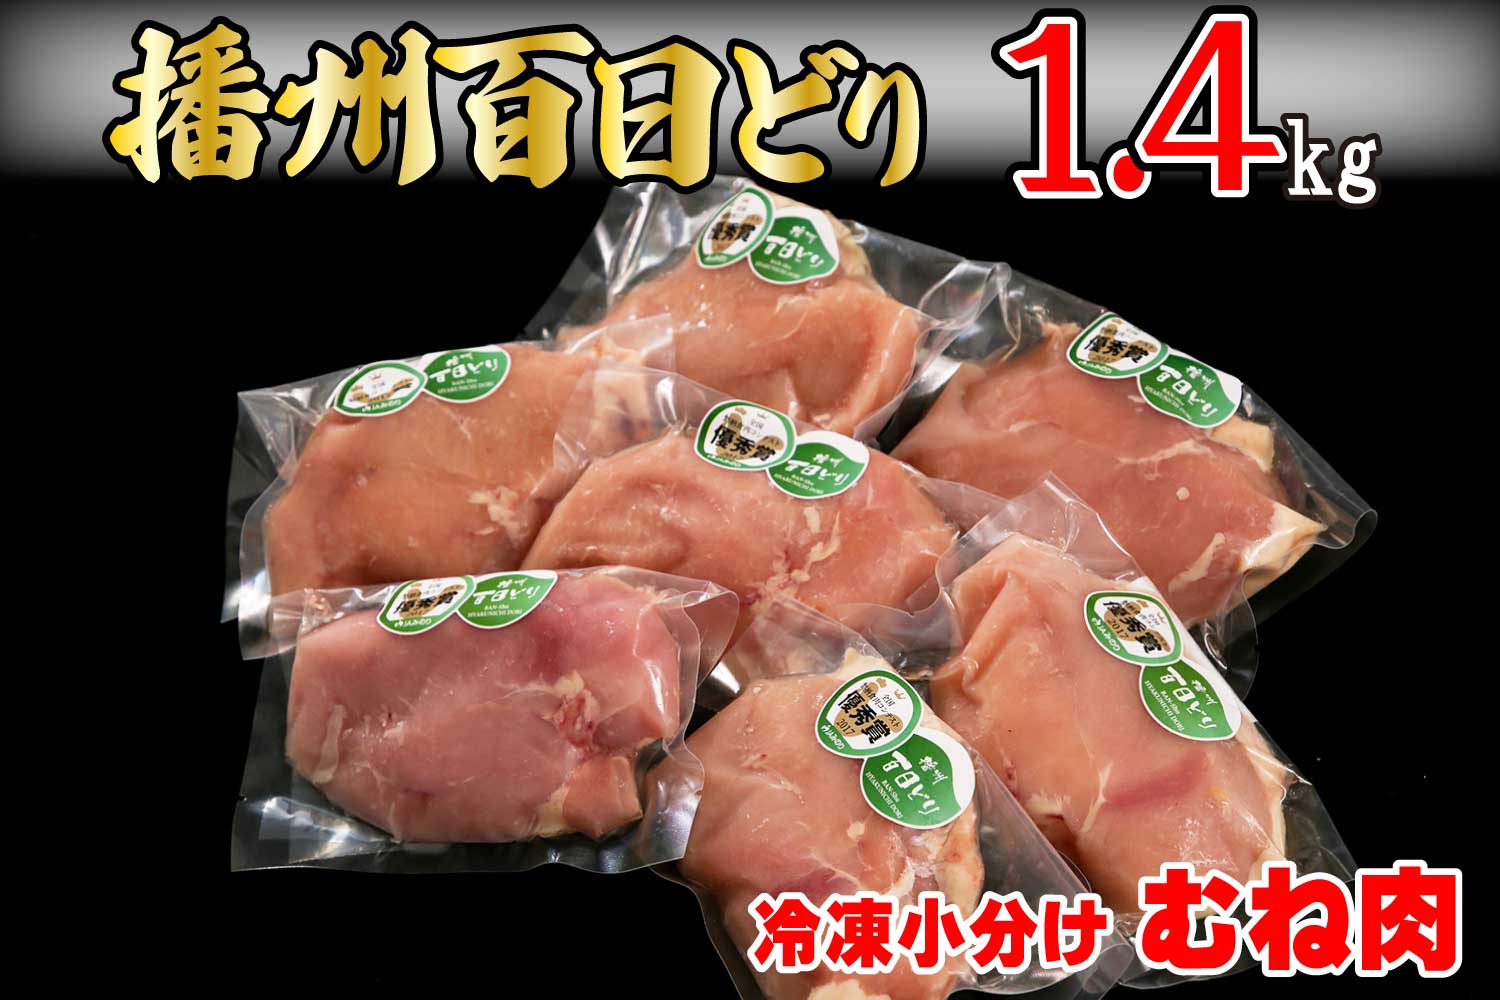 播州百日どり 冷凍小分けむね肉1.4kg[664]